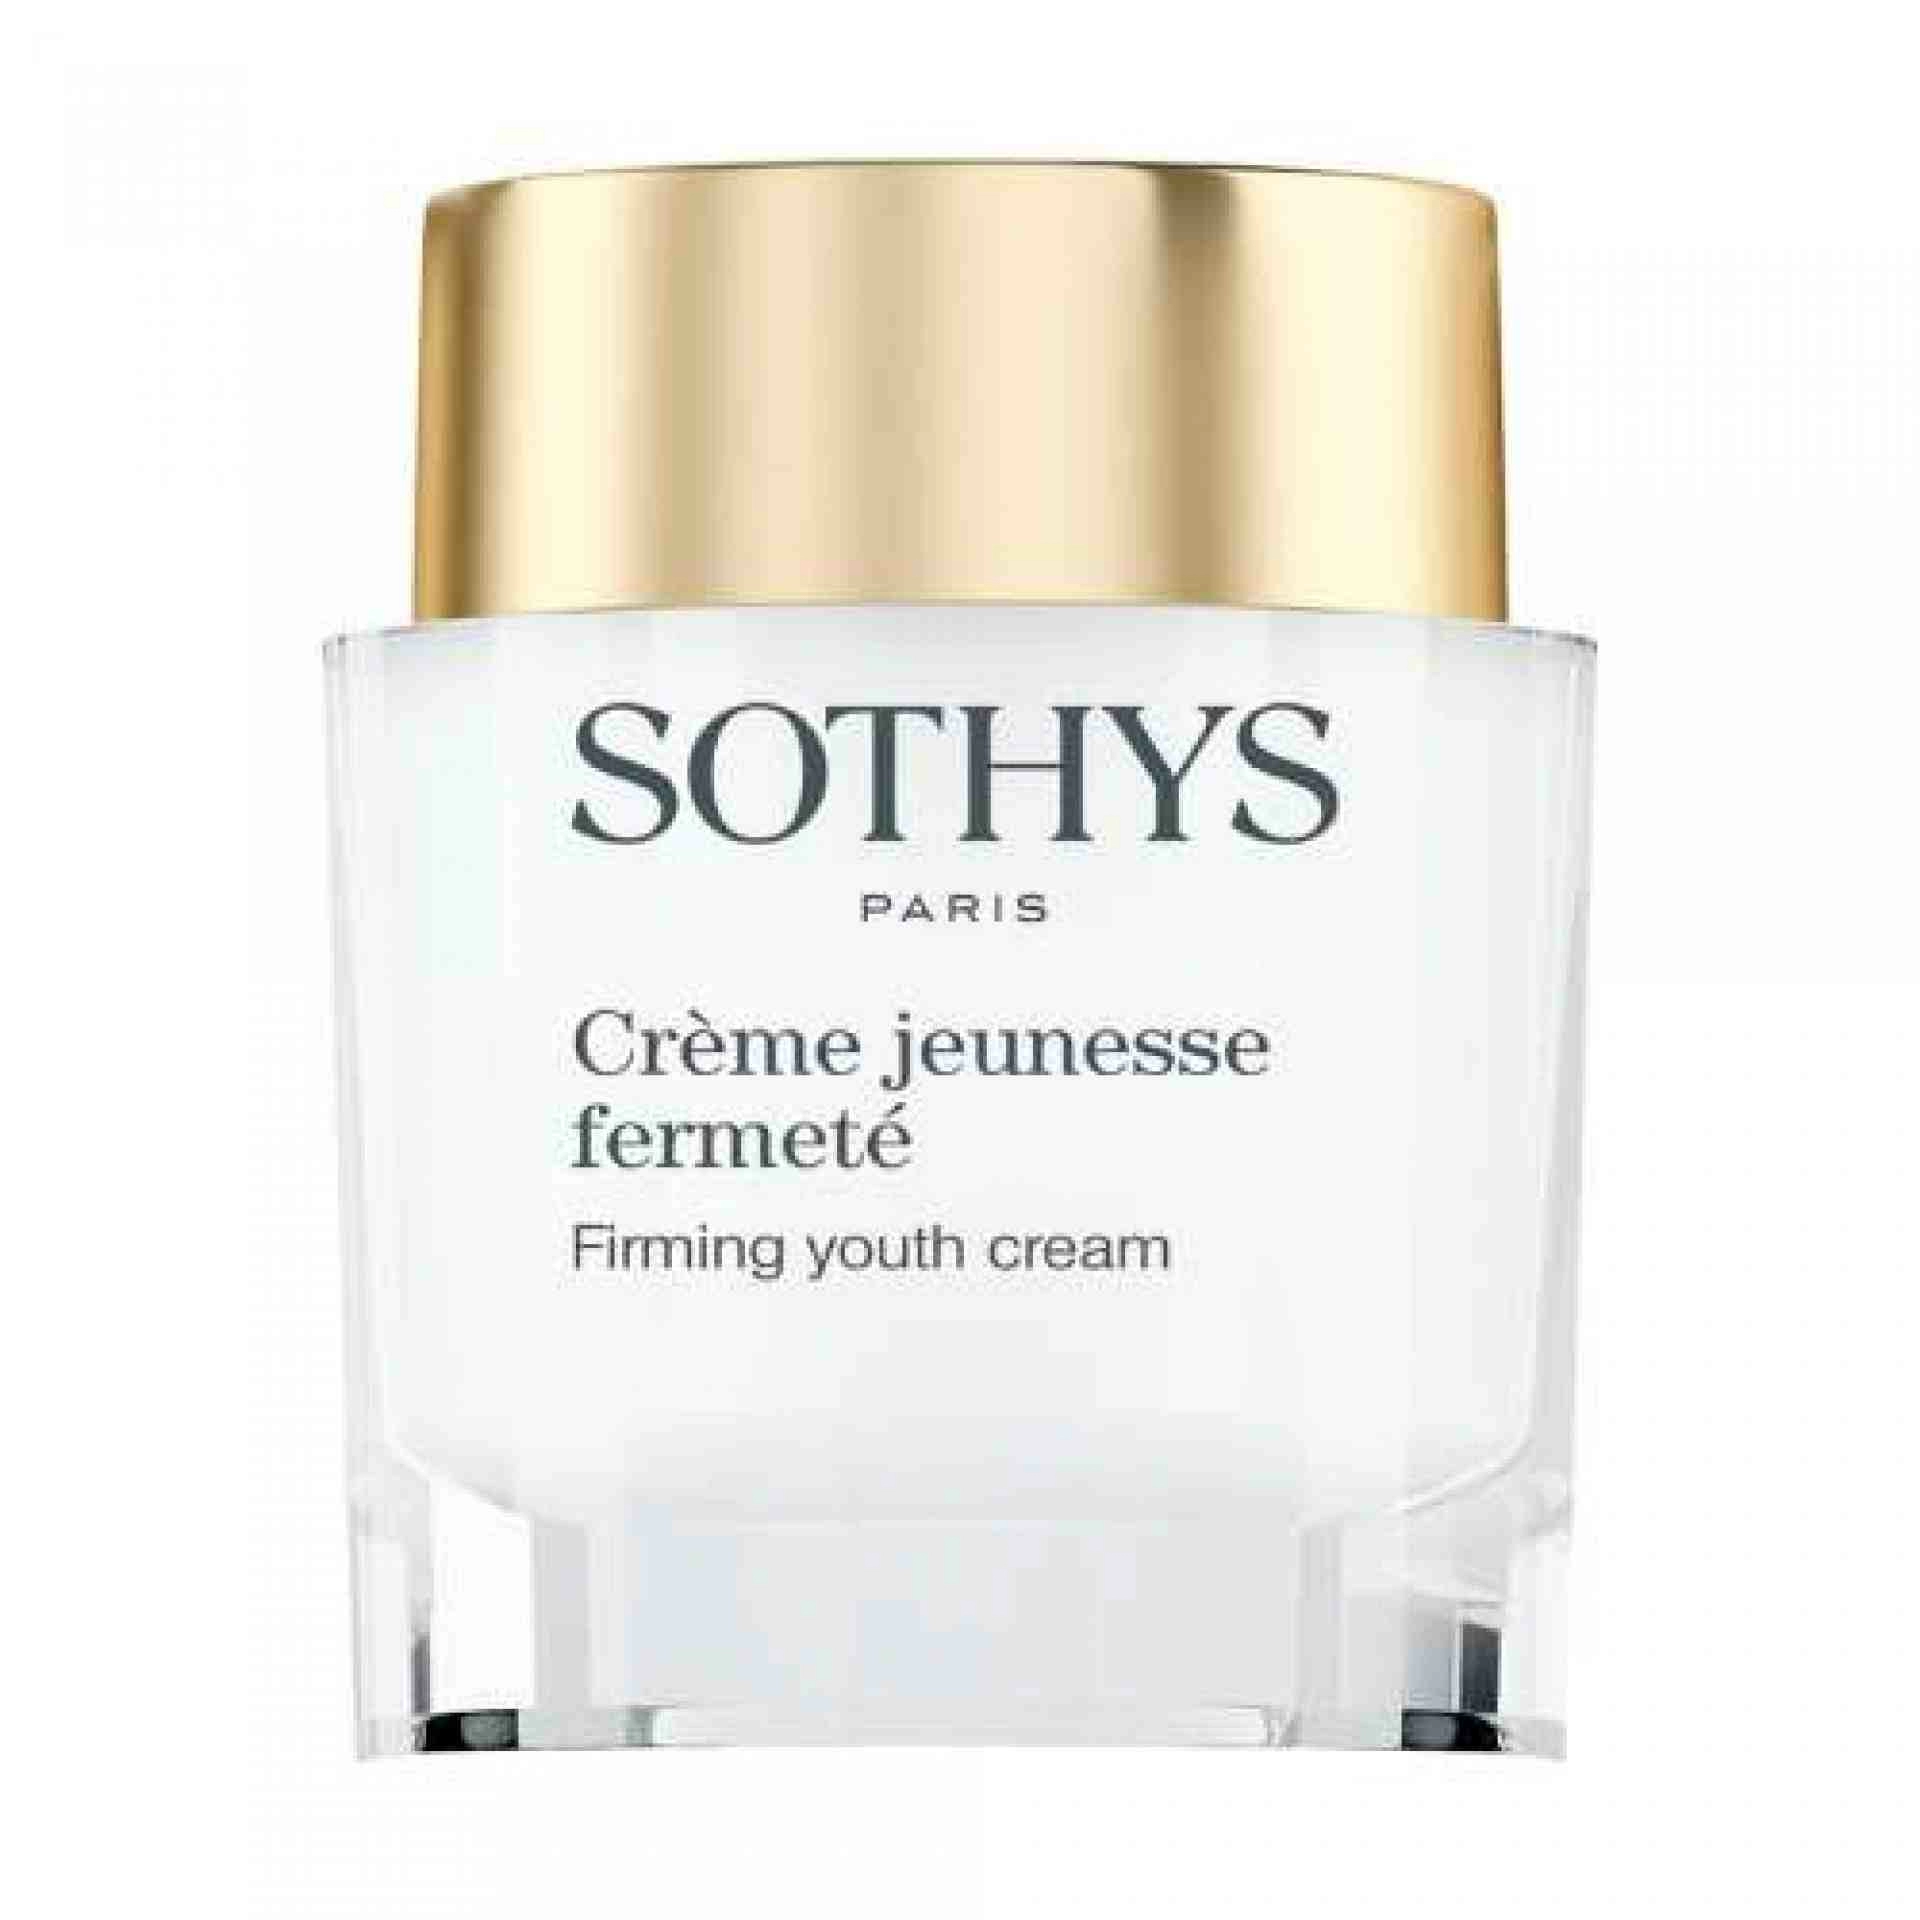 Crème Jeunesse Fermeté | Crema reafirmante 50ml - Sothys ®